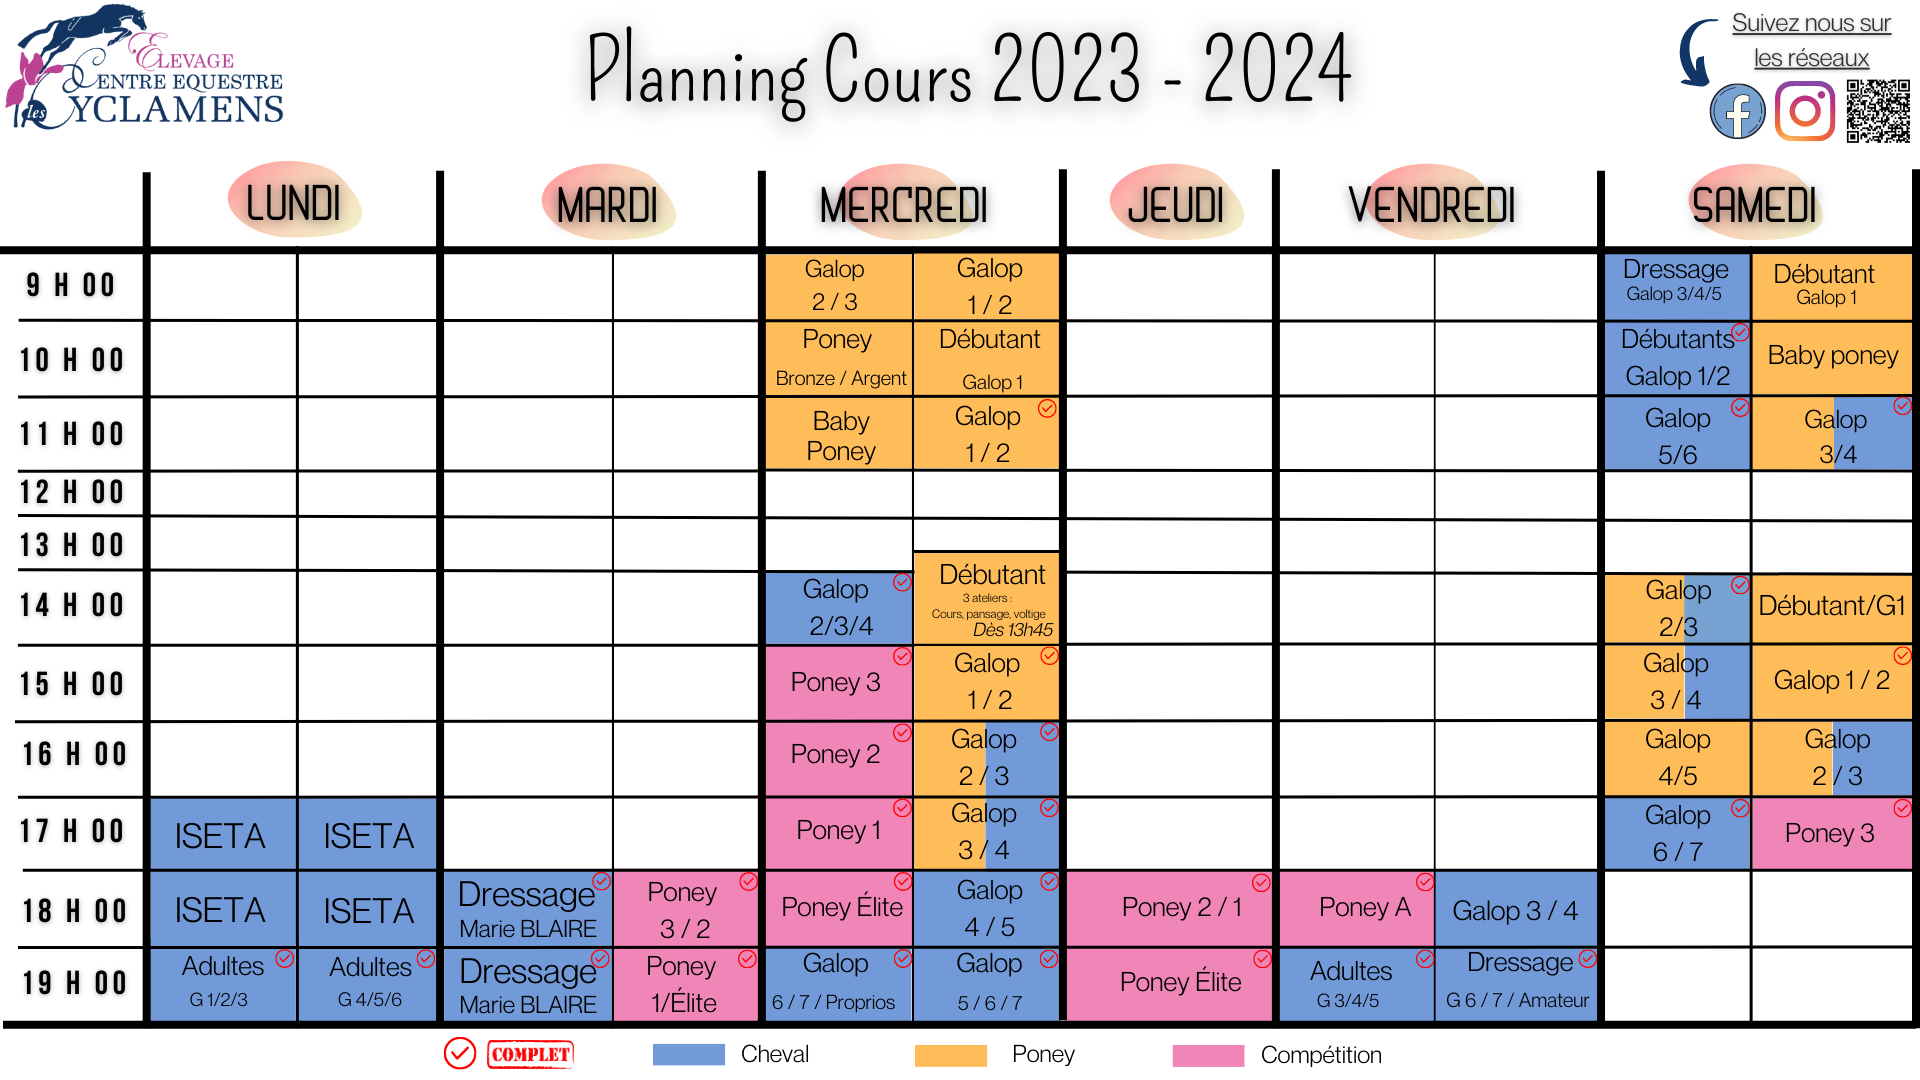 Planning 2023-2024